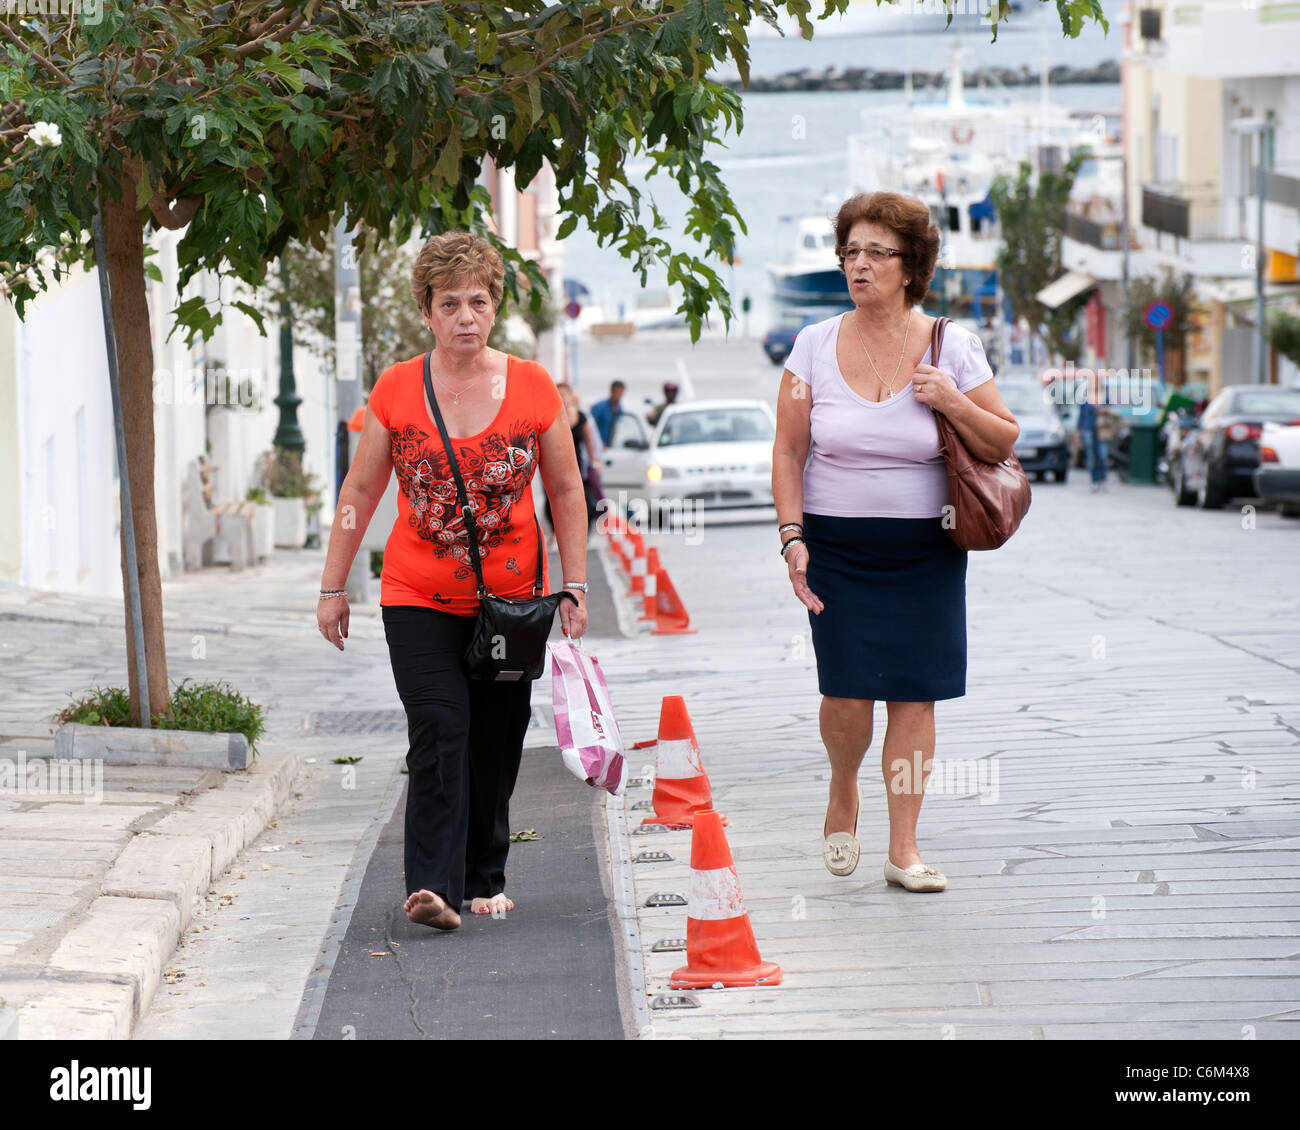 Zwei mittleren Alters griechischen Frauen gehen Leoforos Megalocharis Allee, in Tinos-Stadt auf der griechischen Kykladen Insel Tinos. Stockfoto